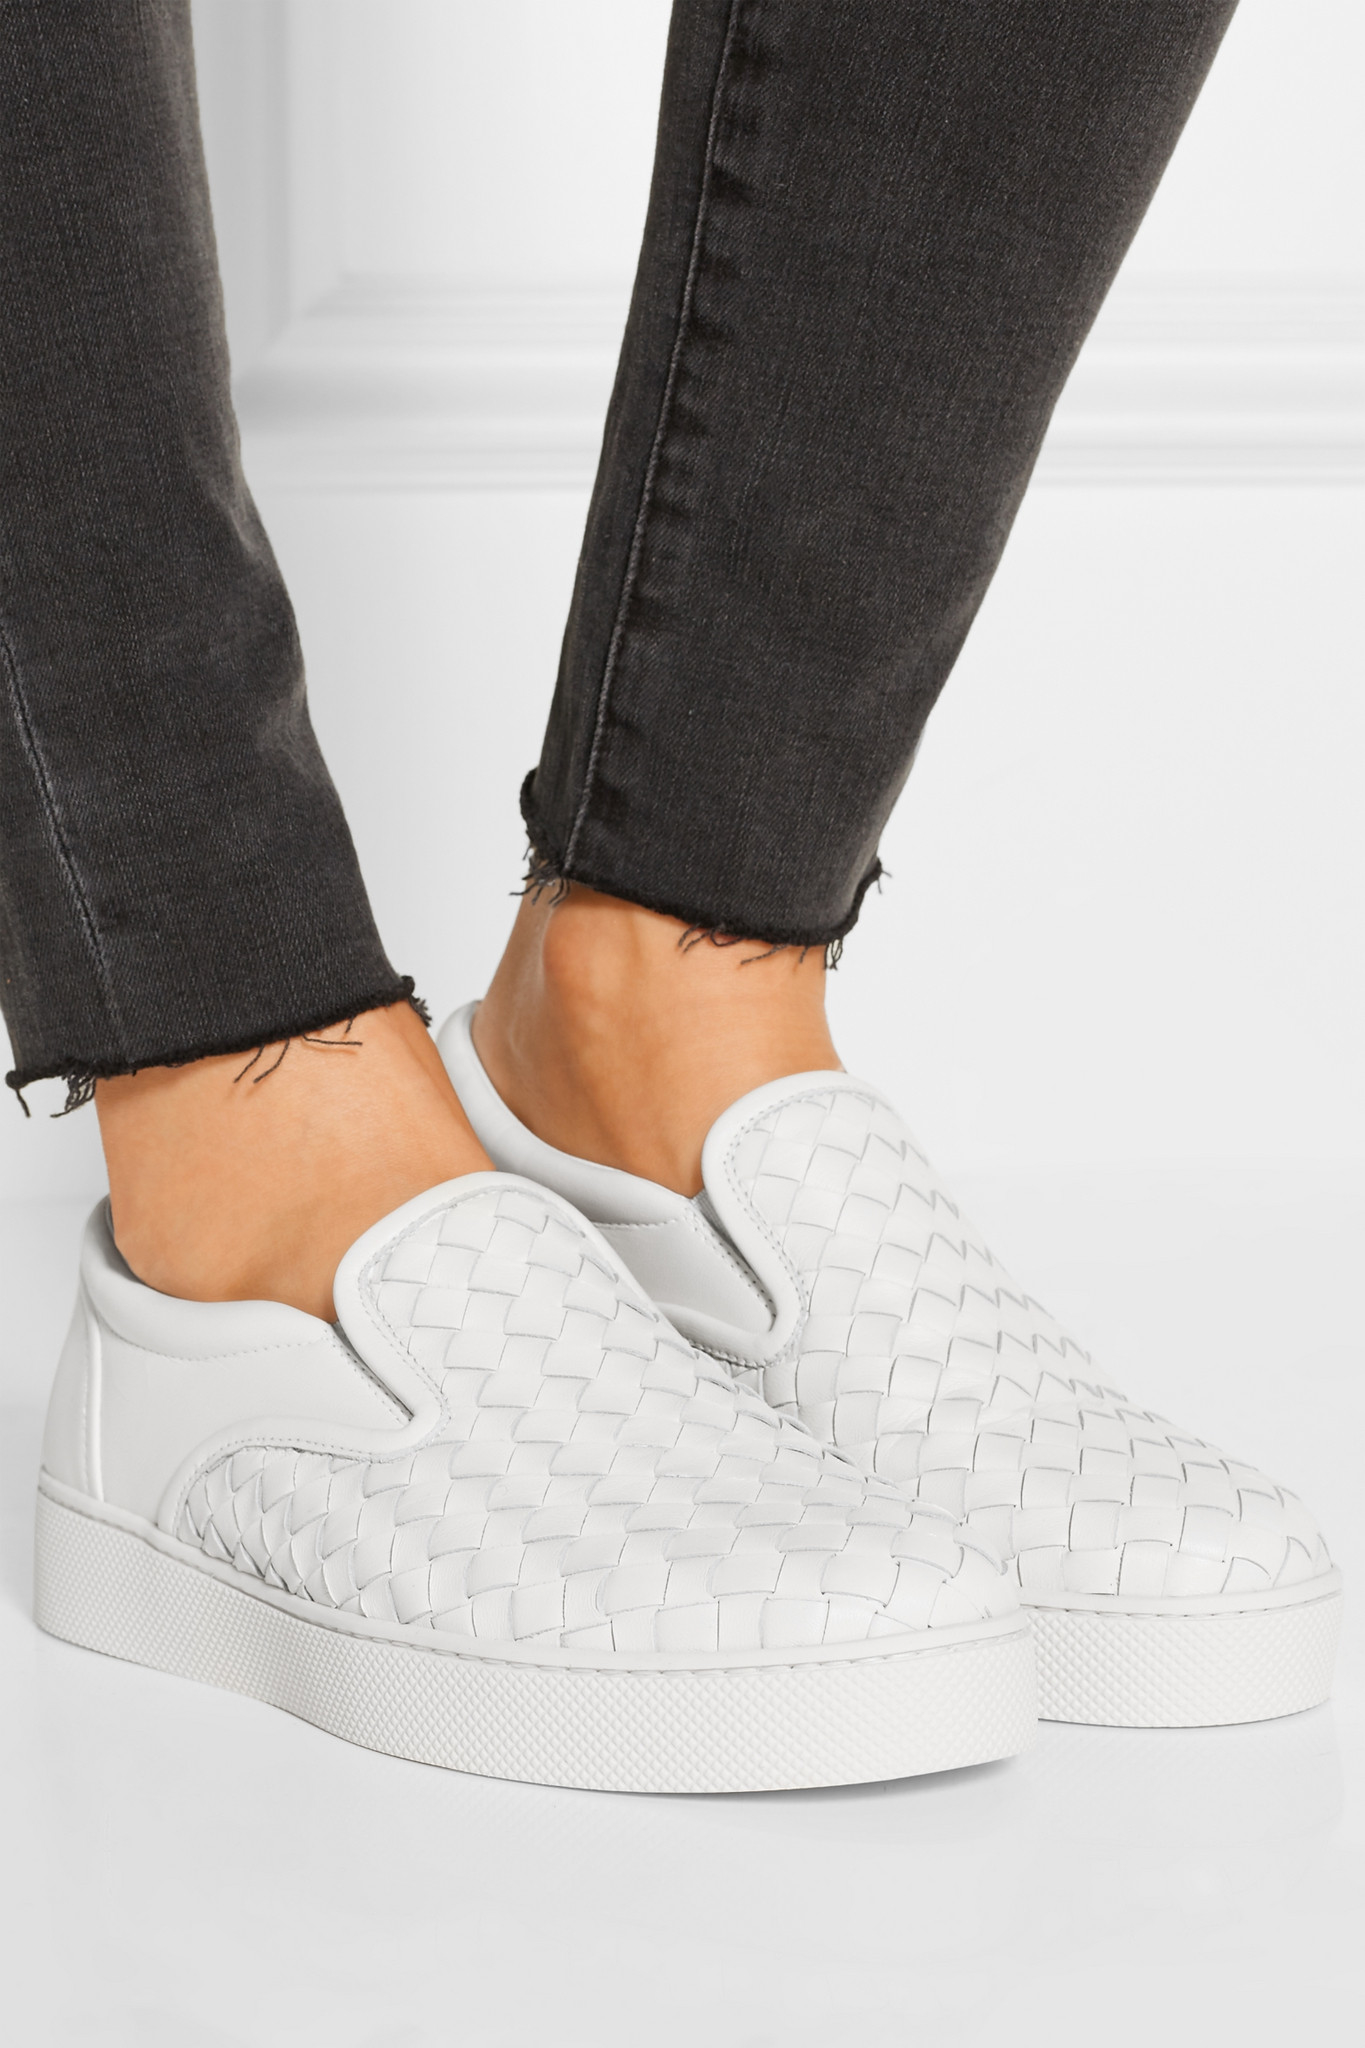 Lyst - Bottega Veneta Intrecciato Leather Slip-on Sneakers in White